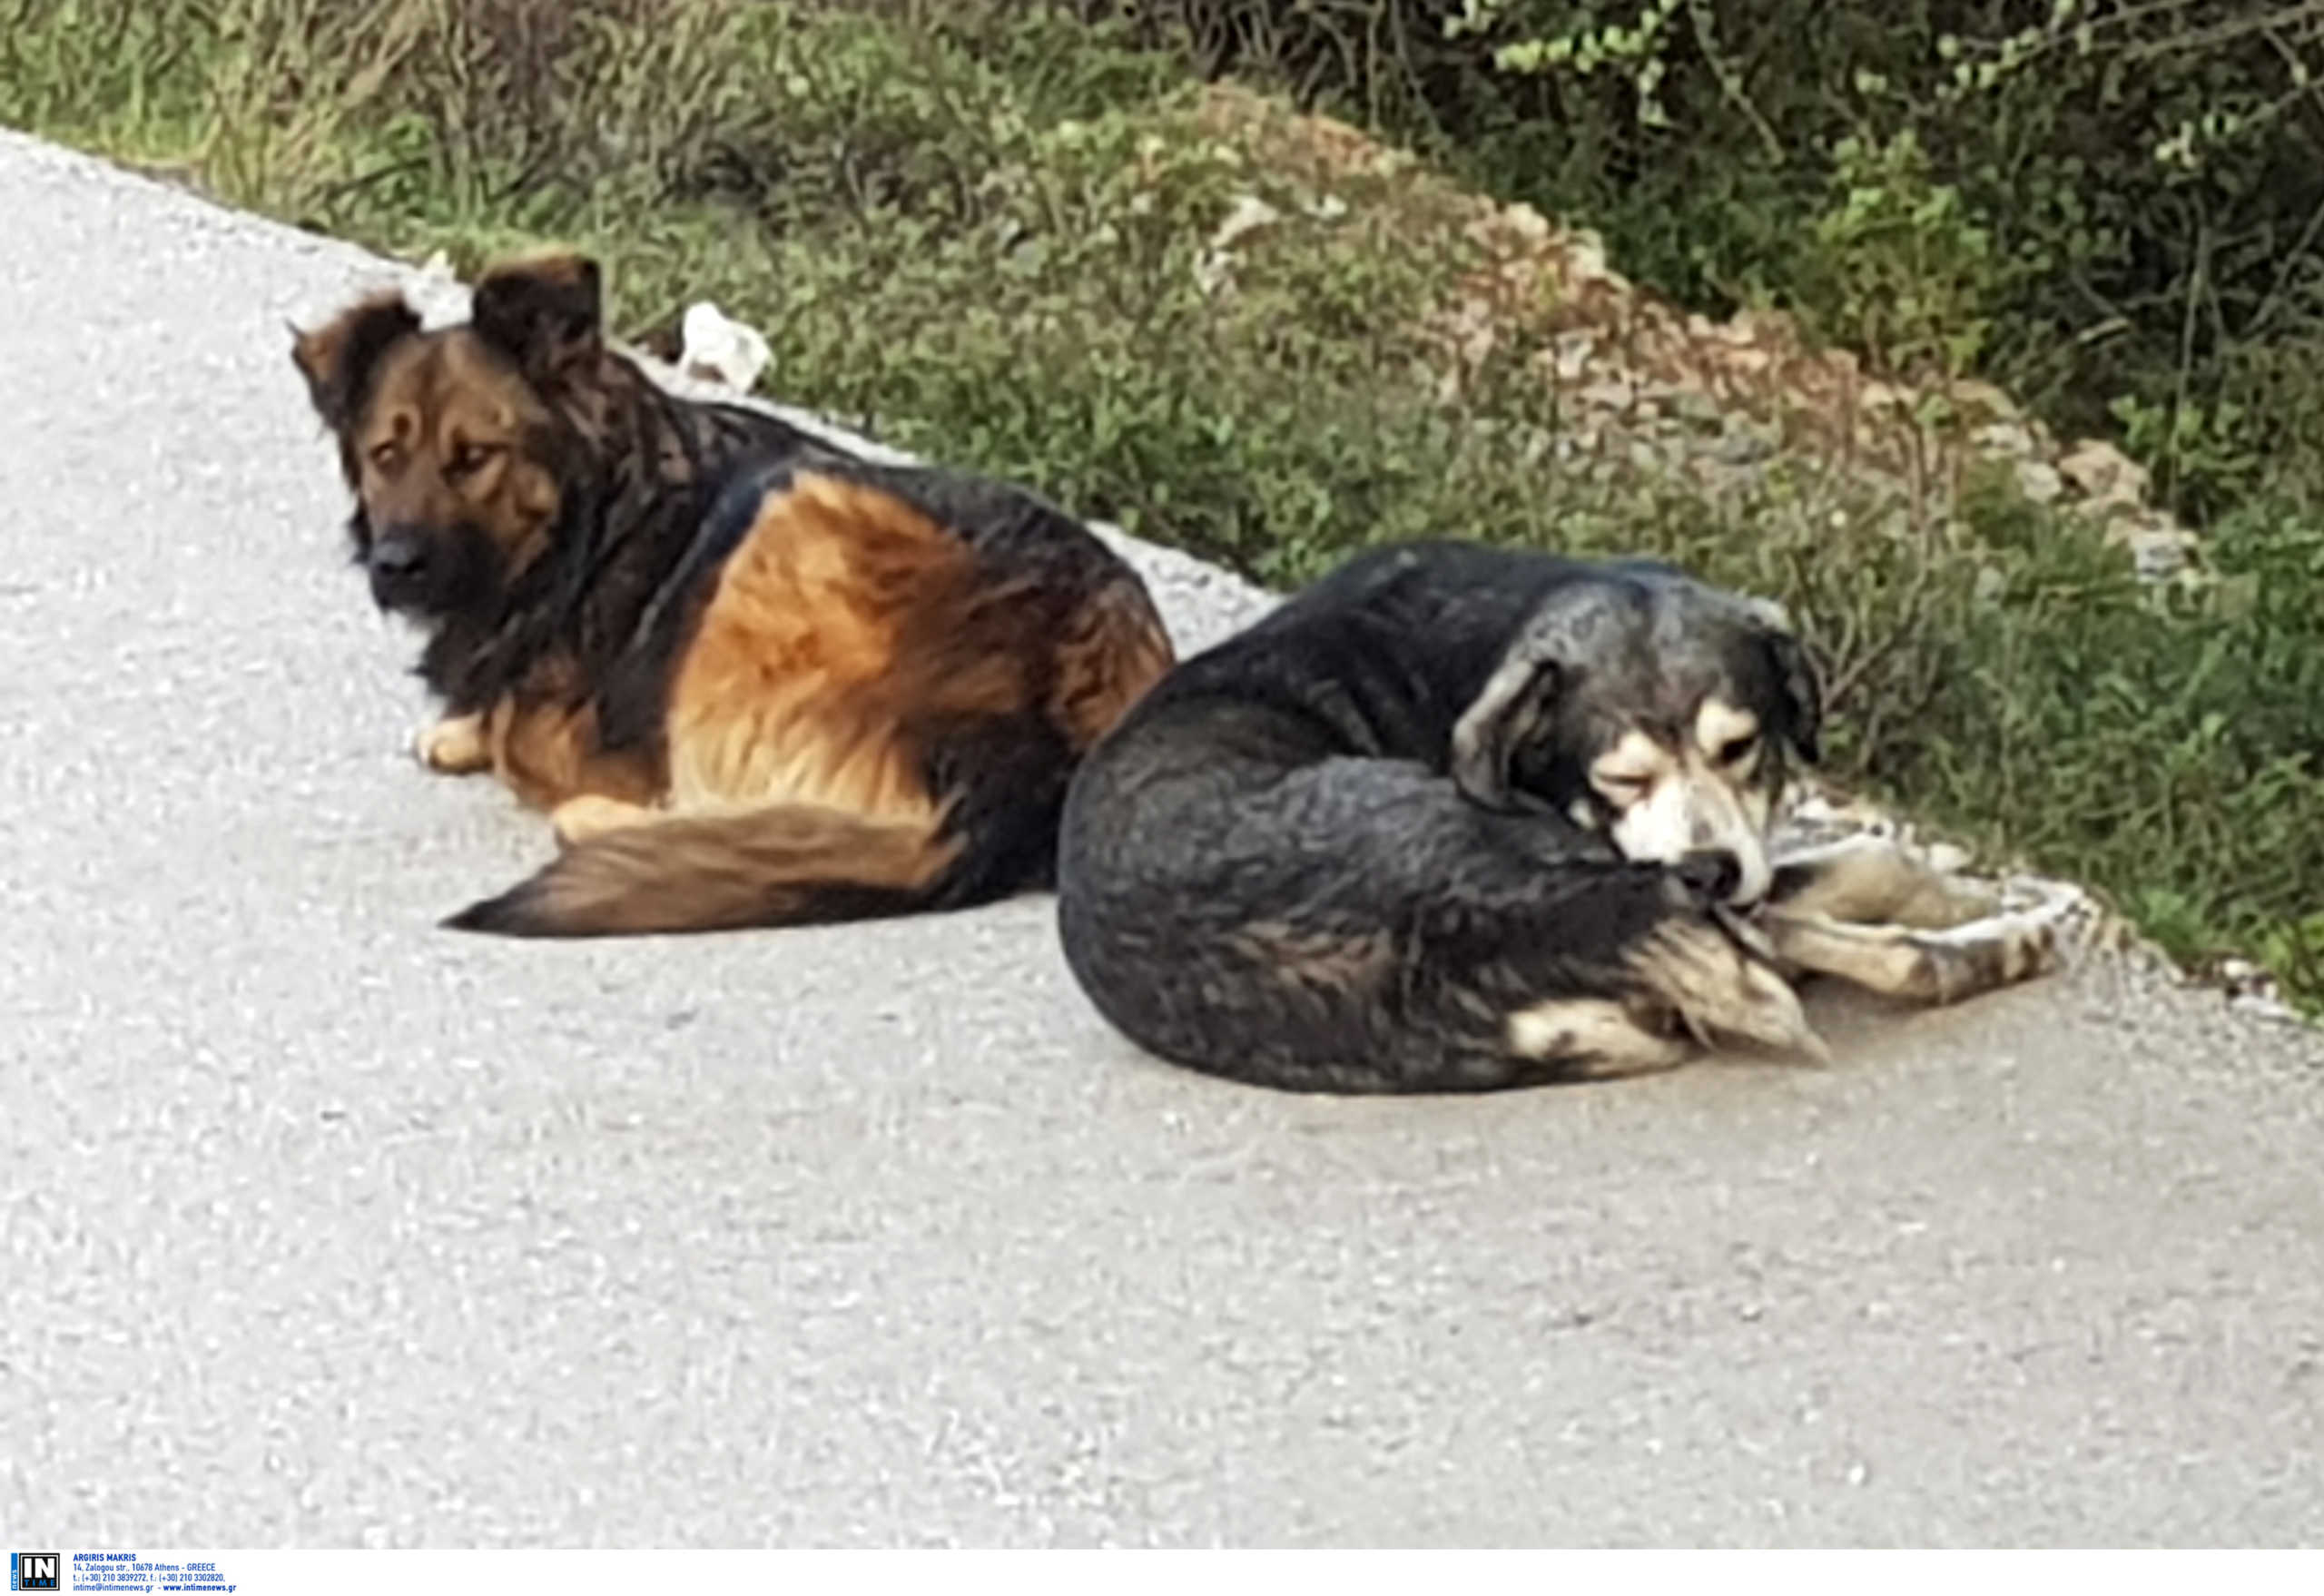 Επιχείρηση σωτηρίας αδέσποτων ζώων στον Δήμο Σαρωνικού